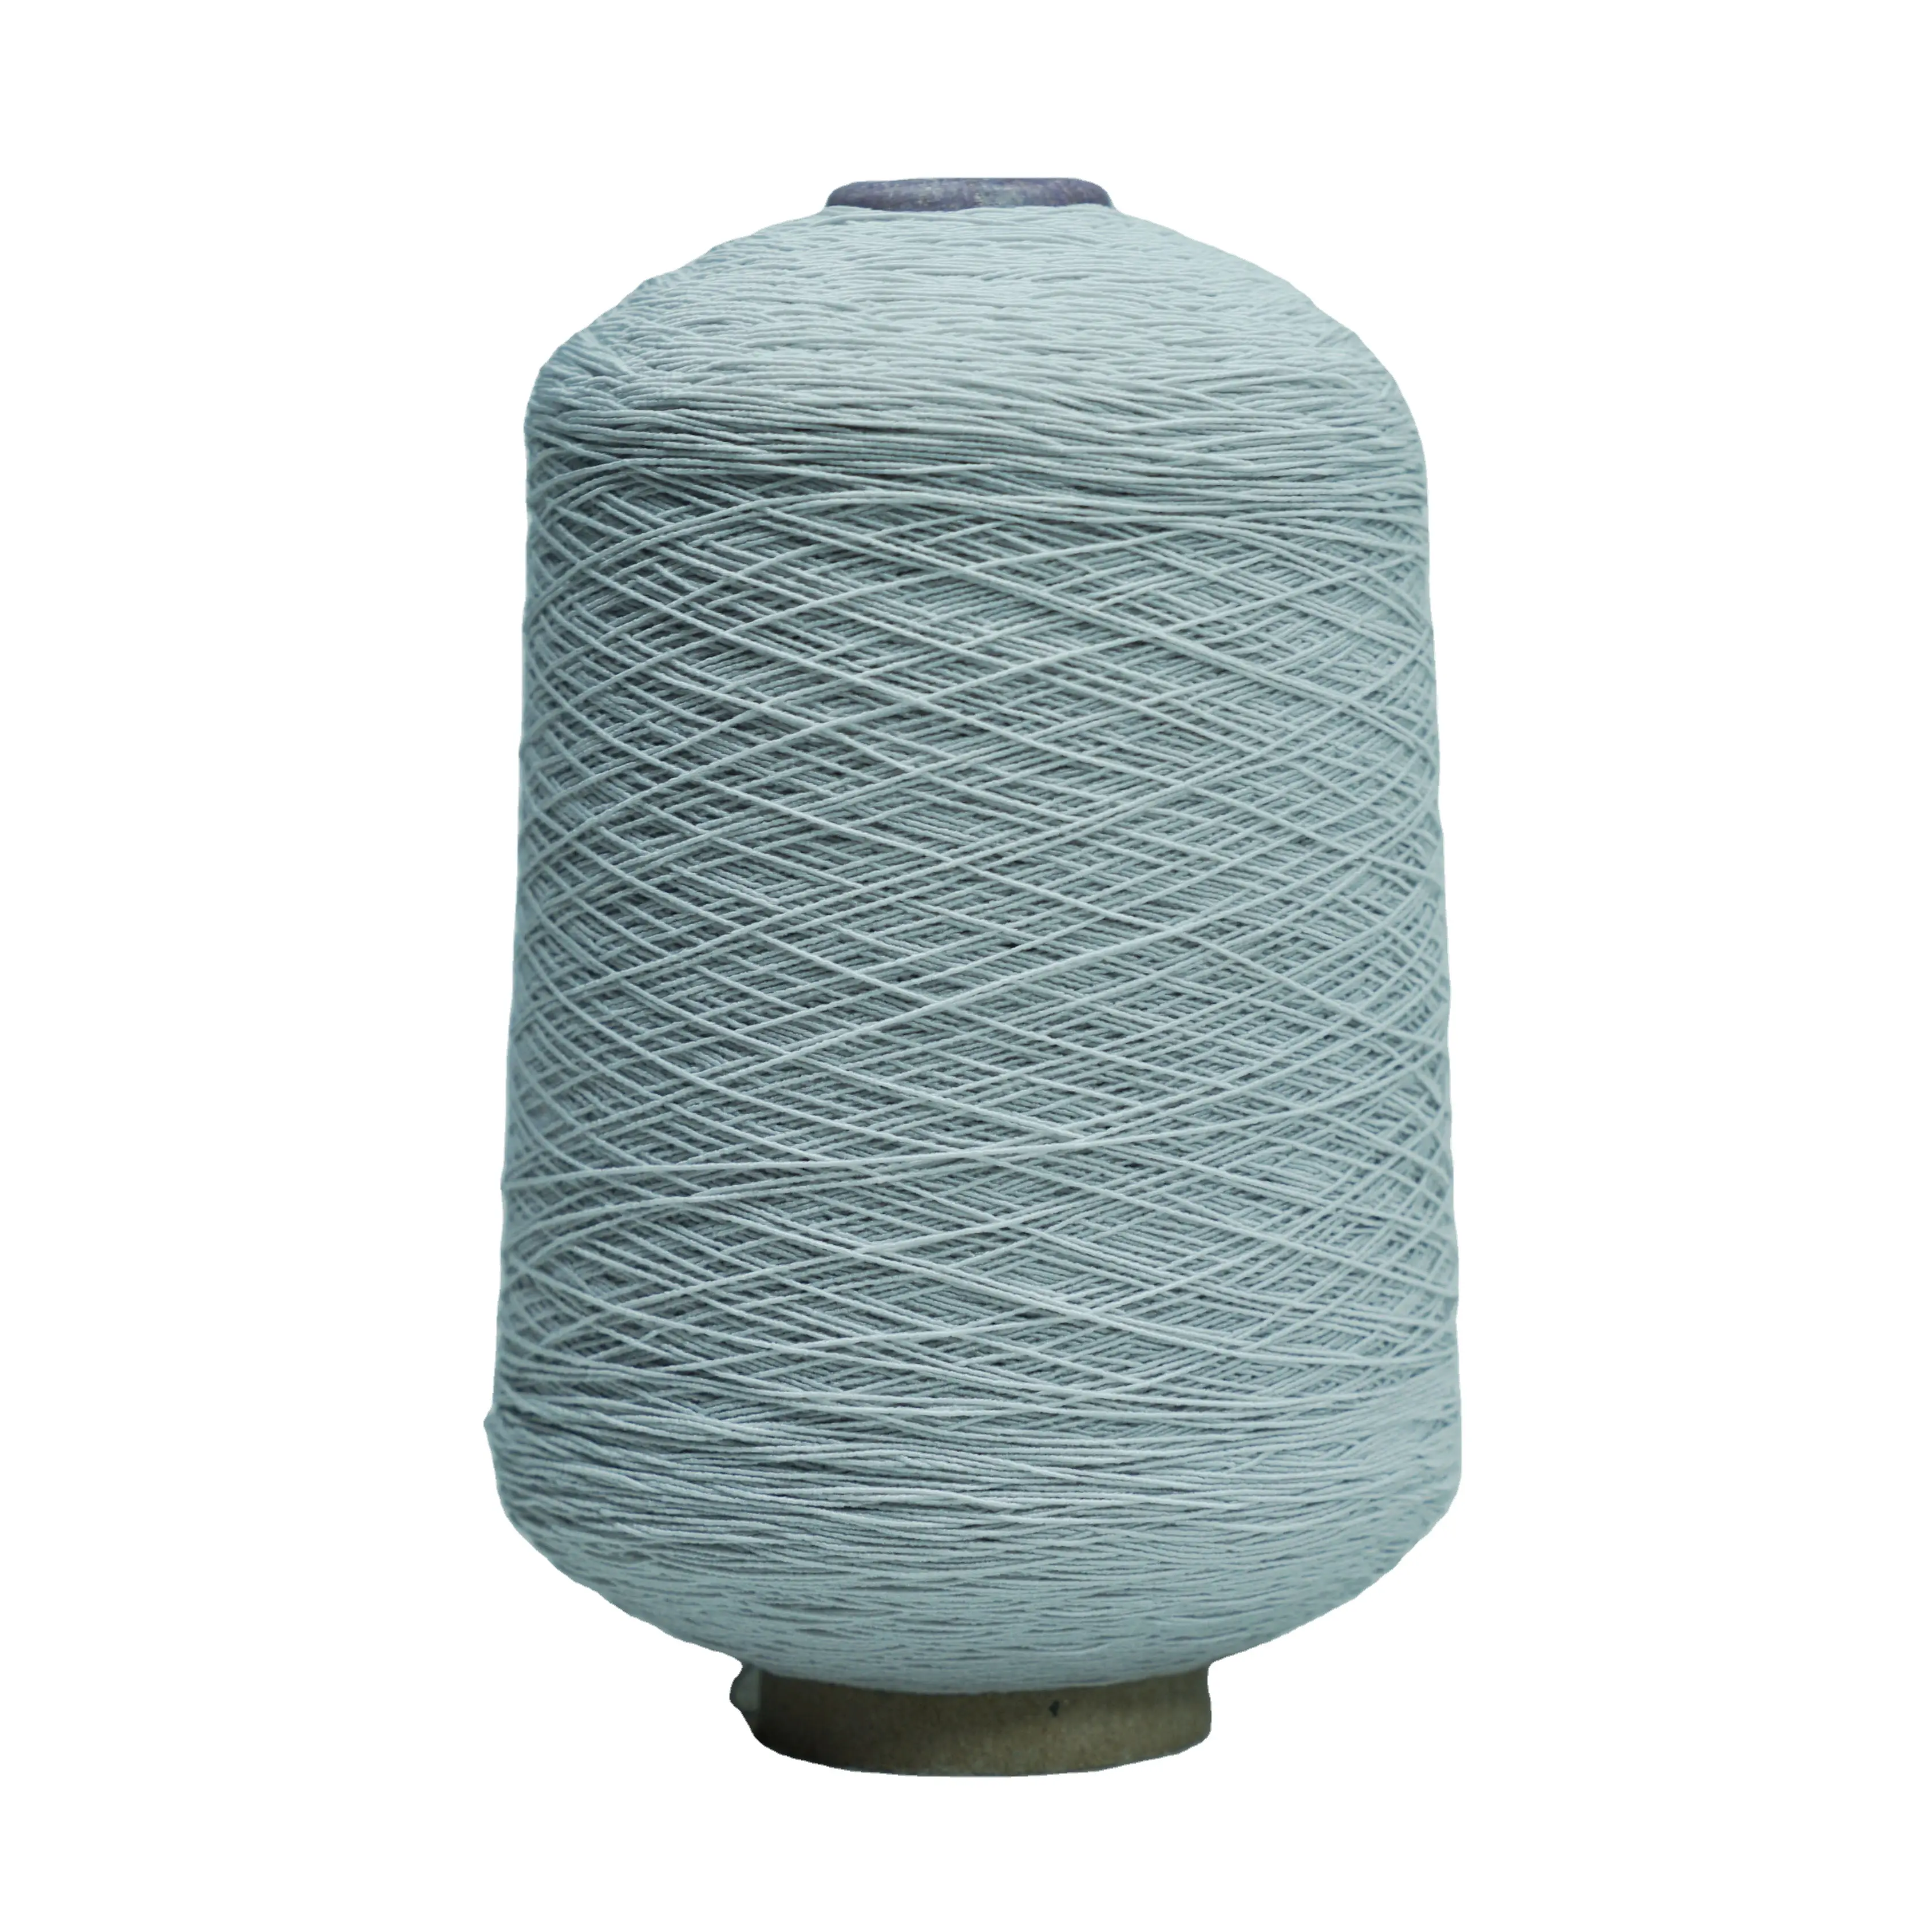 Fil de caoutchouc élastique en latex recouvert de blanc de vente chaude 907575 fil de caoutchouc pour le tricot